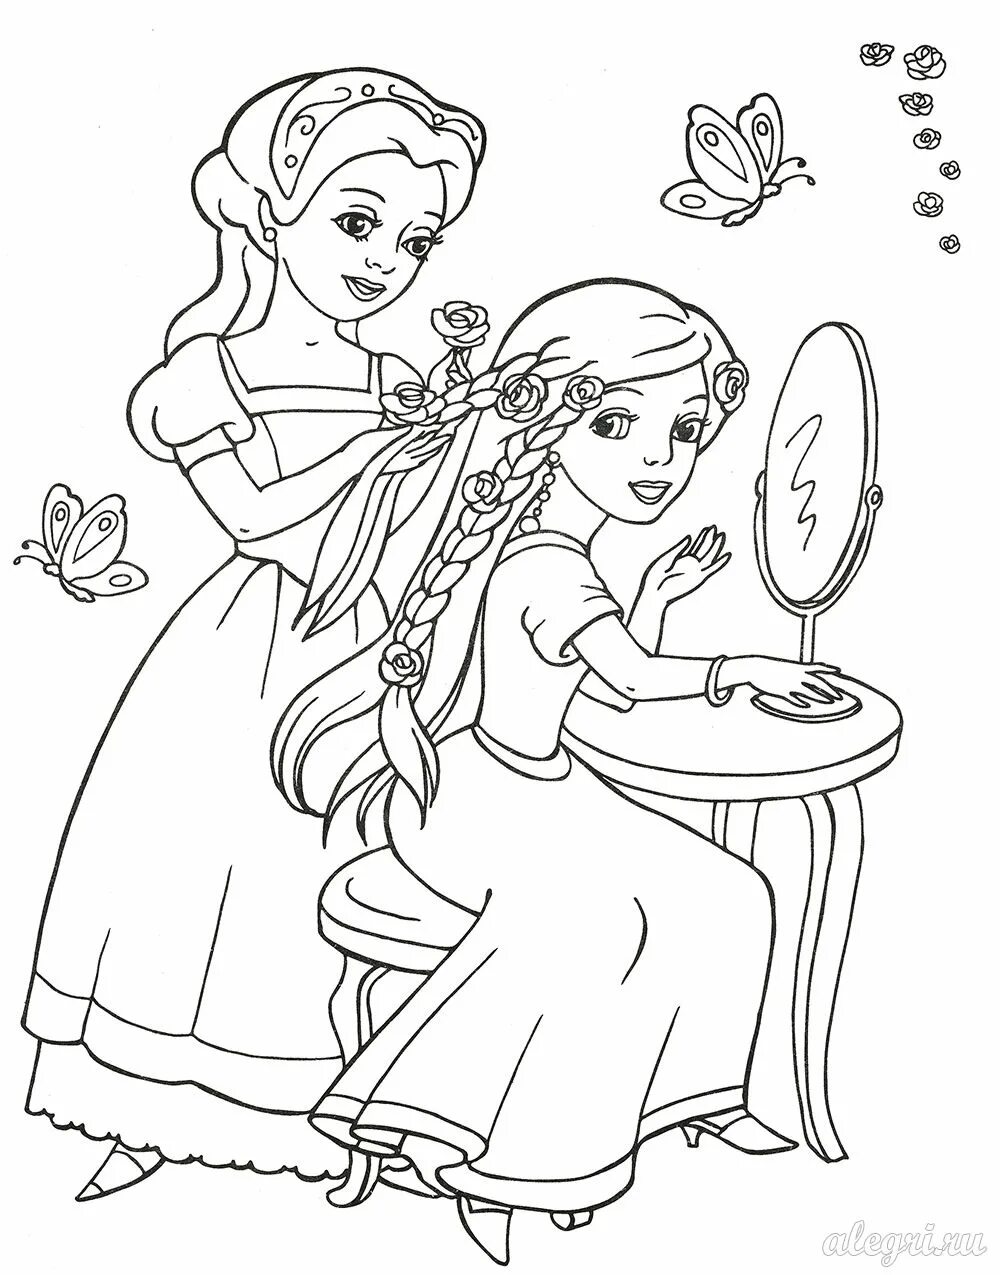 Рисовать девочки 7 лет. Раскраска для девочек. Принцесса. Раскраска. Раскраски для девочек 5 лет принцессы. Раскраски для девочек 7 лет принцессы.